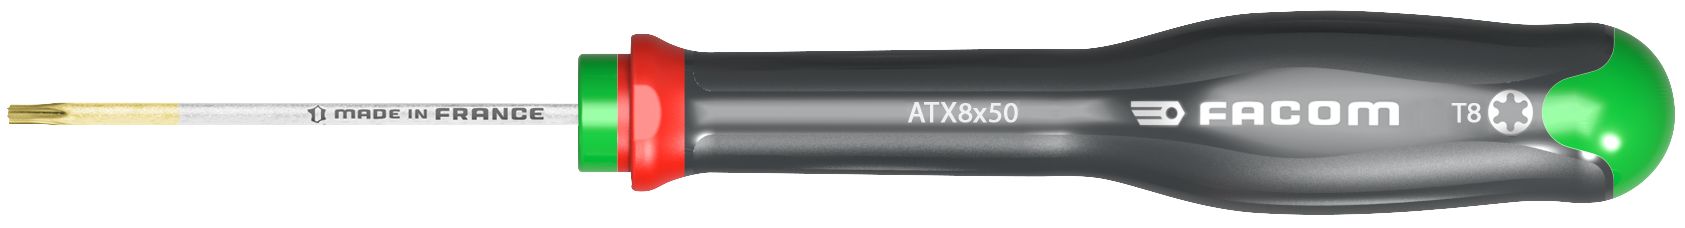 1.ATX6X50 Schroevendraaier protwist torx 6x50